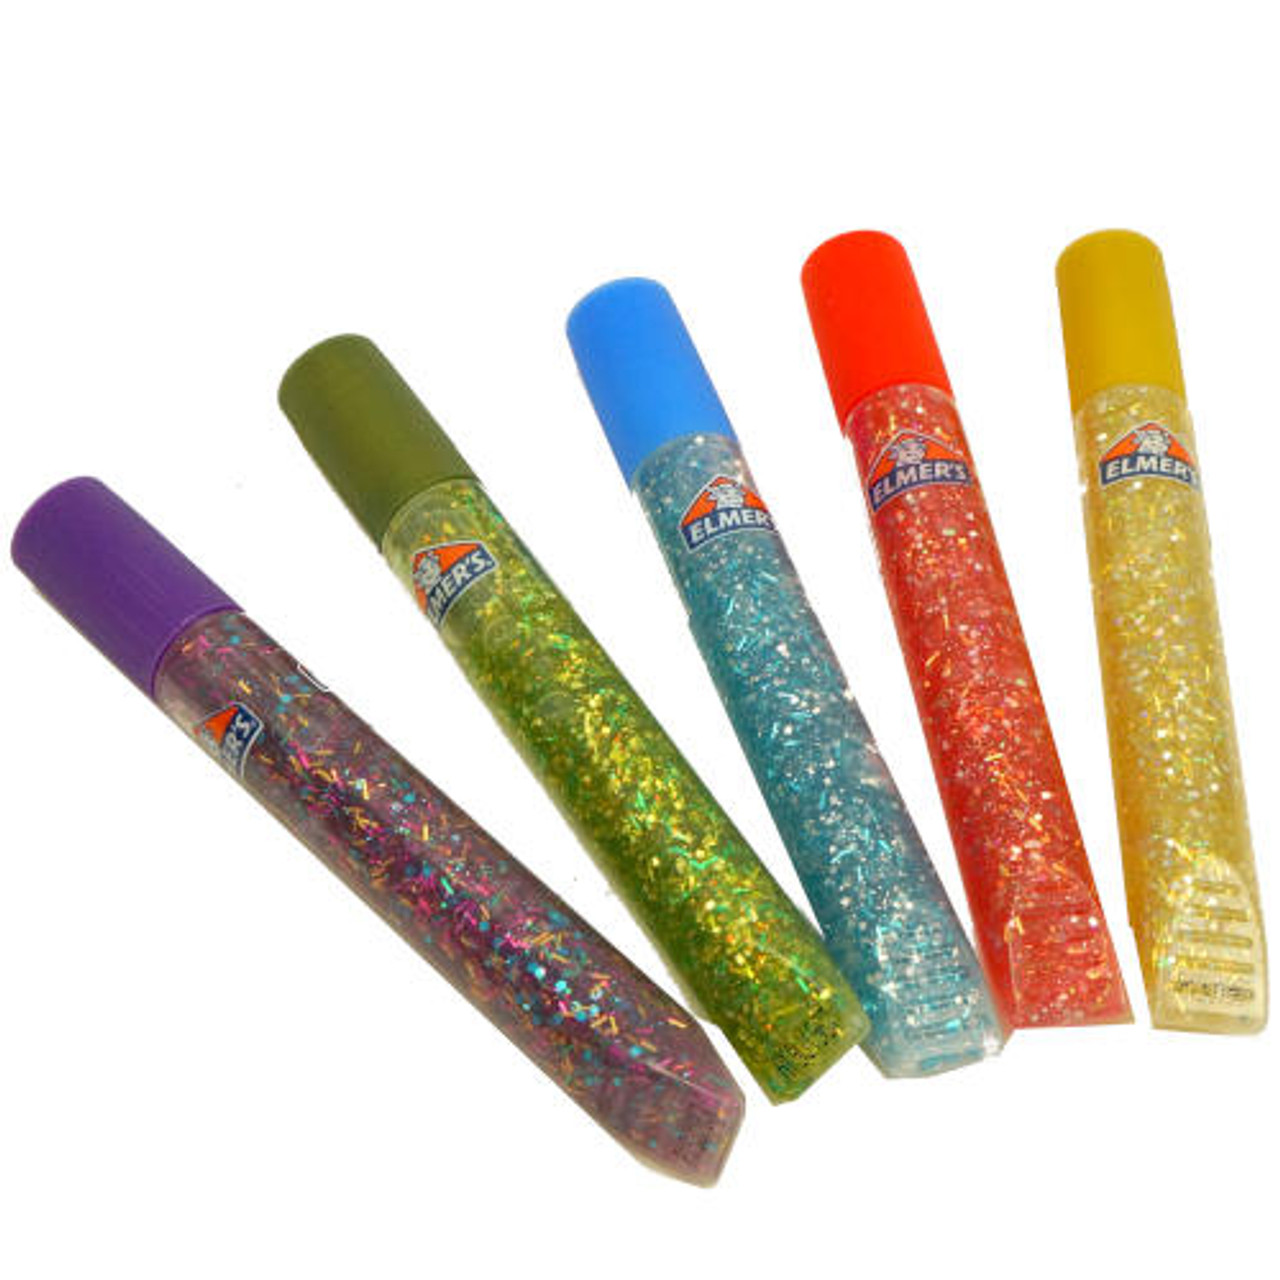 Elmers Glitter Glue, Classic - 5 pack, 0.356 fl oz pens